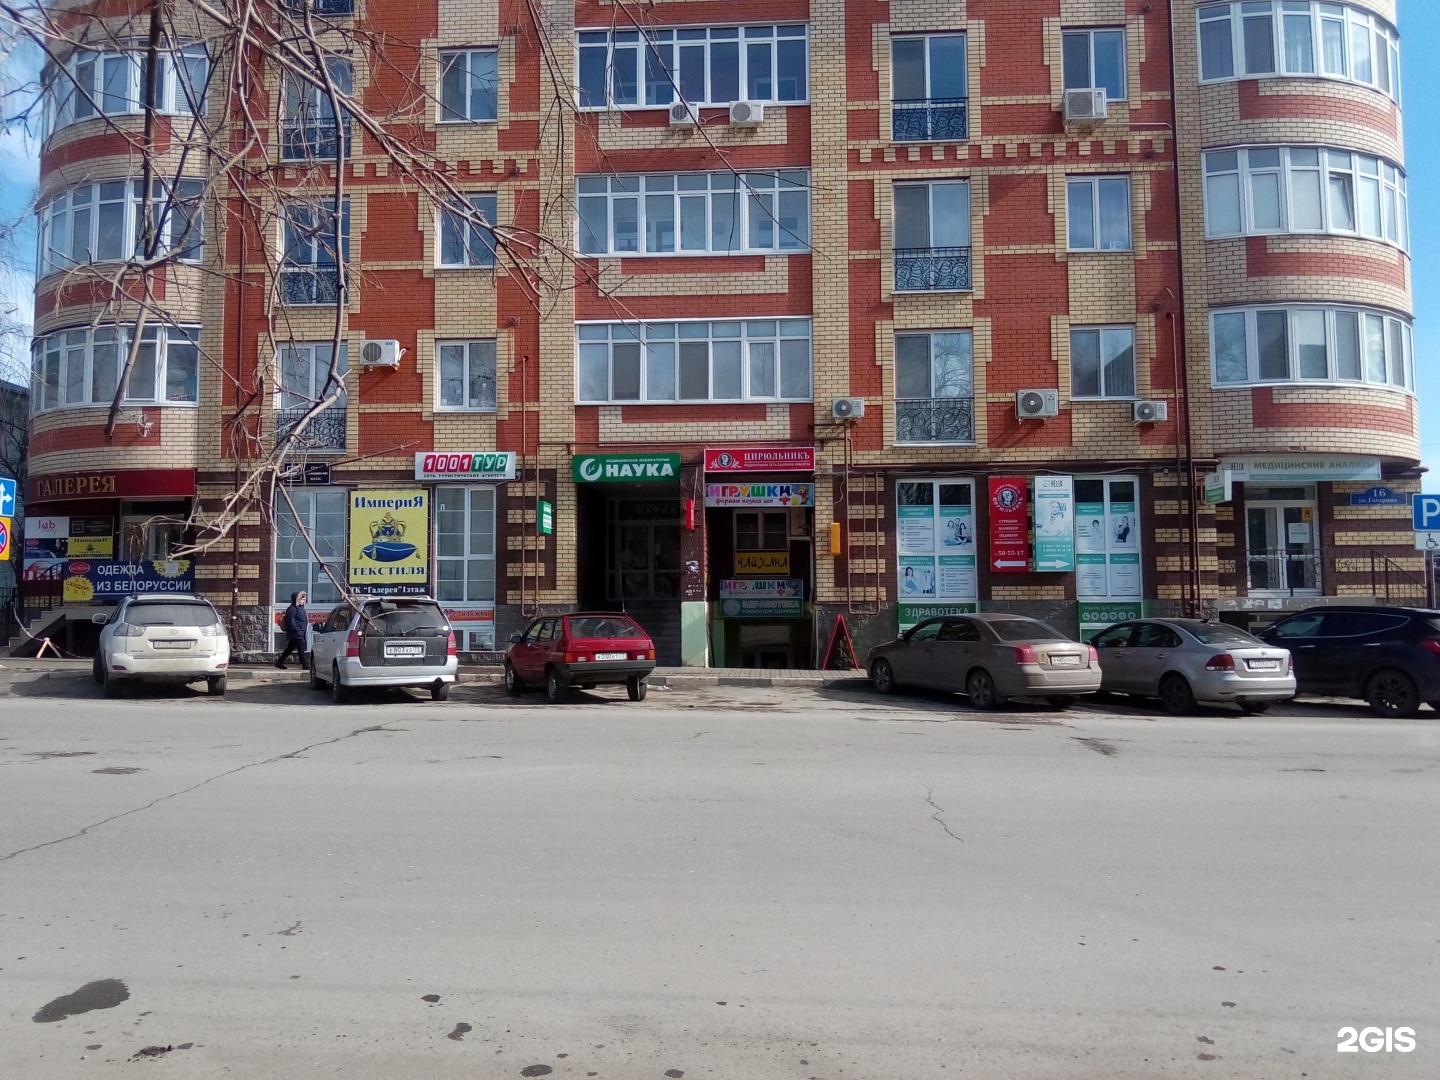 Магазин Детских Игрушек В Ульяновске